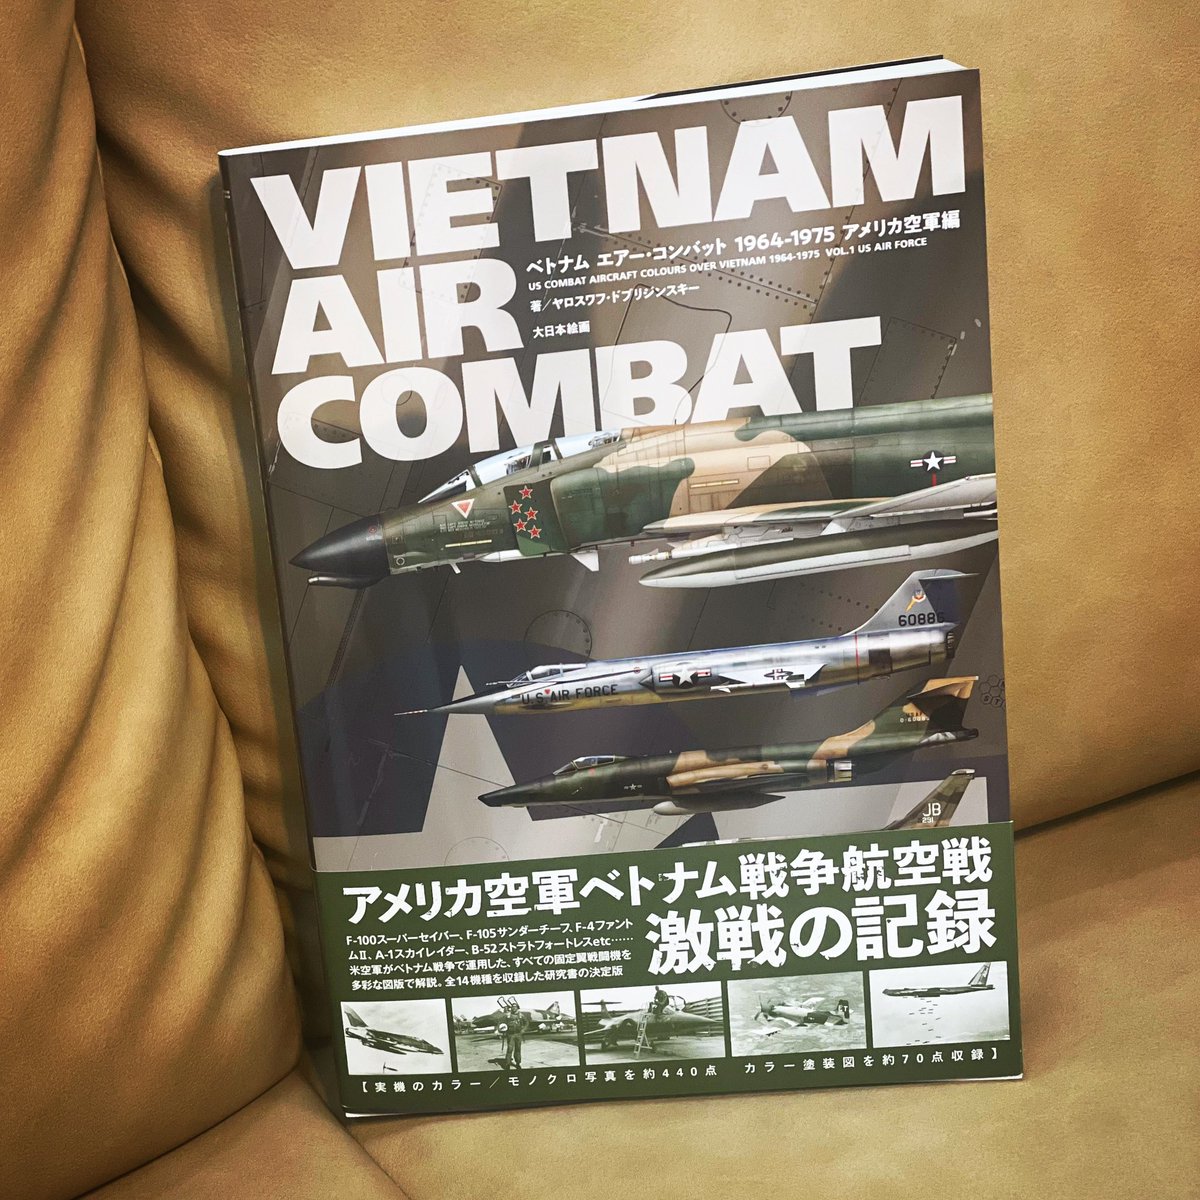 「VIETNAM AIR COMBAT ベトナム エアー・コンバット 1964-1975 アメリカ空軍編」が届いておりました。感謝です。エース担当が、これは良い本ですねぇと騒いでおります。